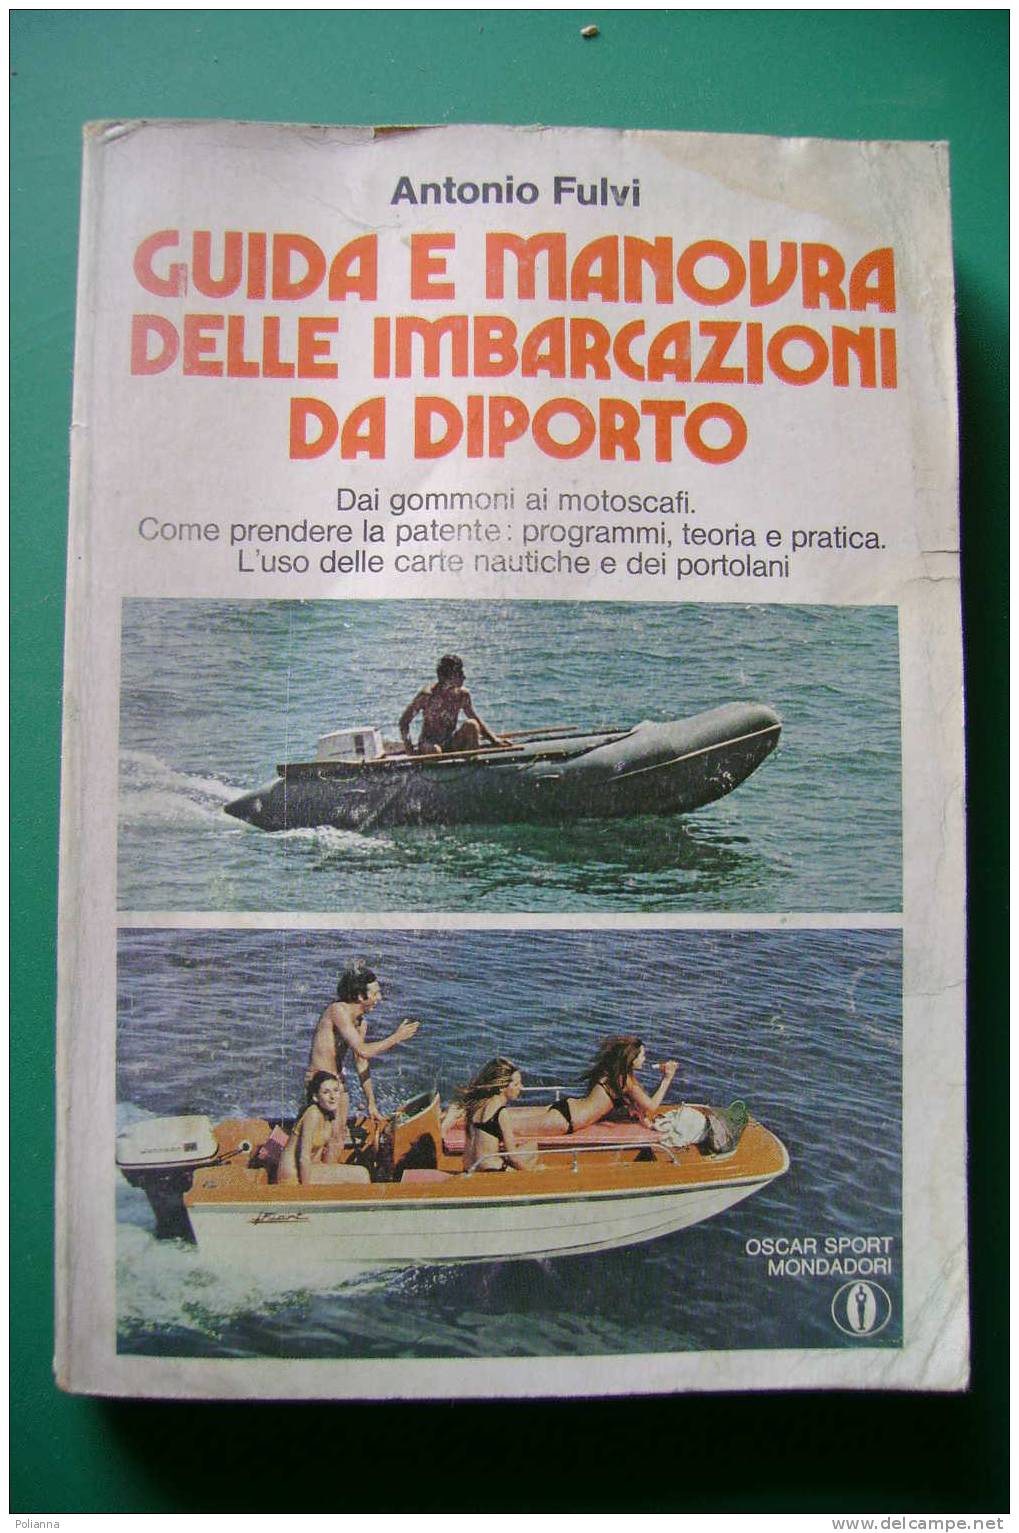 PDM/43 Antonio Fulvi GUIDA E MANOVRA DELLE IMBARCAZIONI DA DIPORTO Oscar Mondadori 1975/motoscafi/nautica - Sports